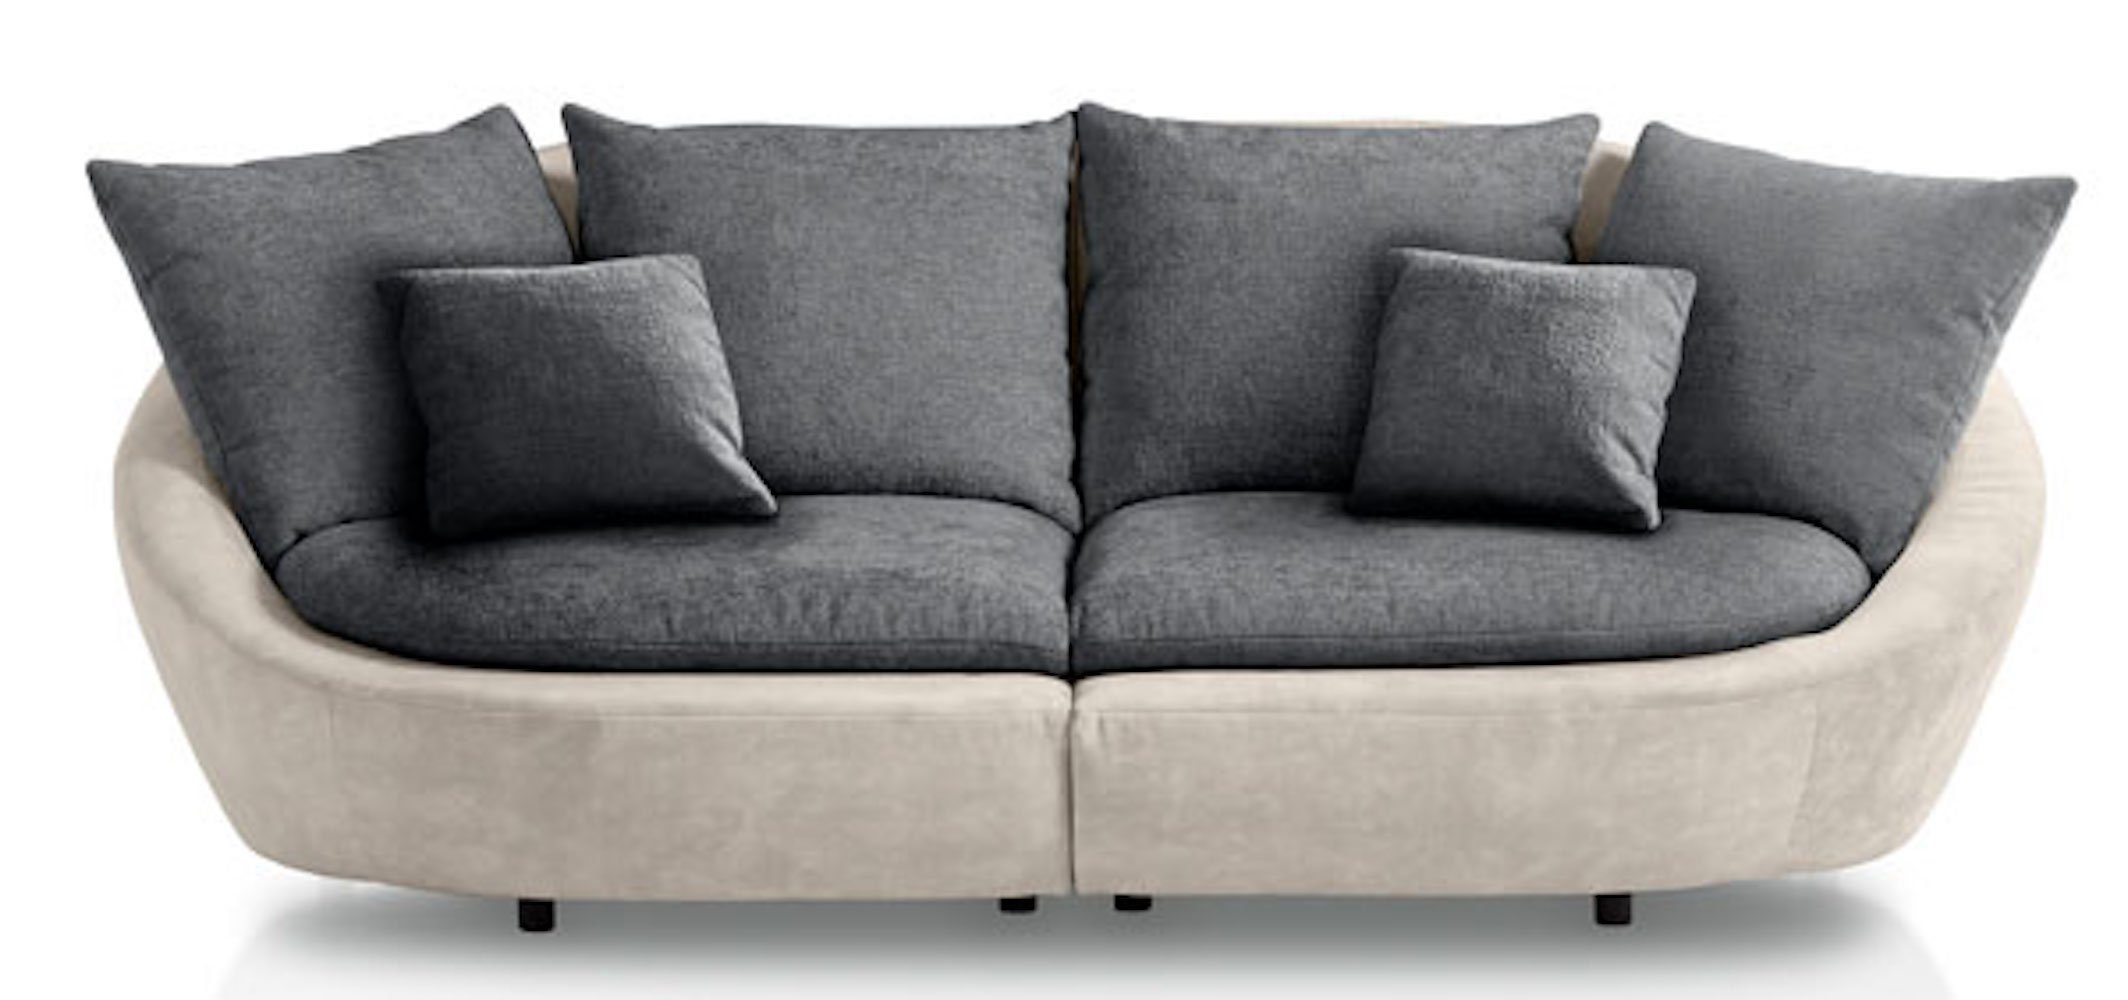 Feldmann-Wohnen Big-Sofa Moroni, Farbe wählbar aus 7 Varianten 1 Teile, 237x129x87cm cremeweiß / dunkelgrau mit Kissen